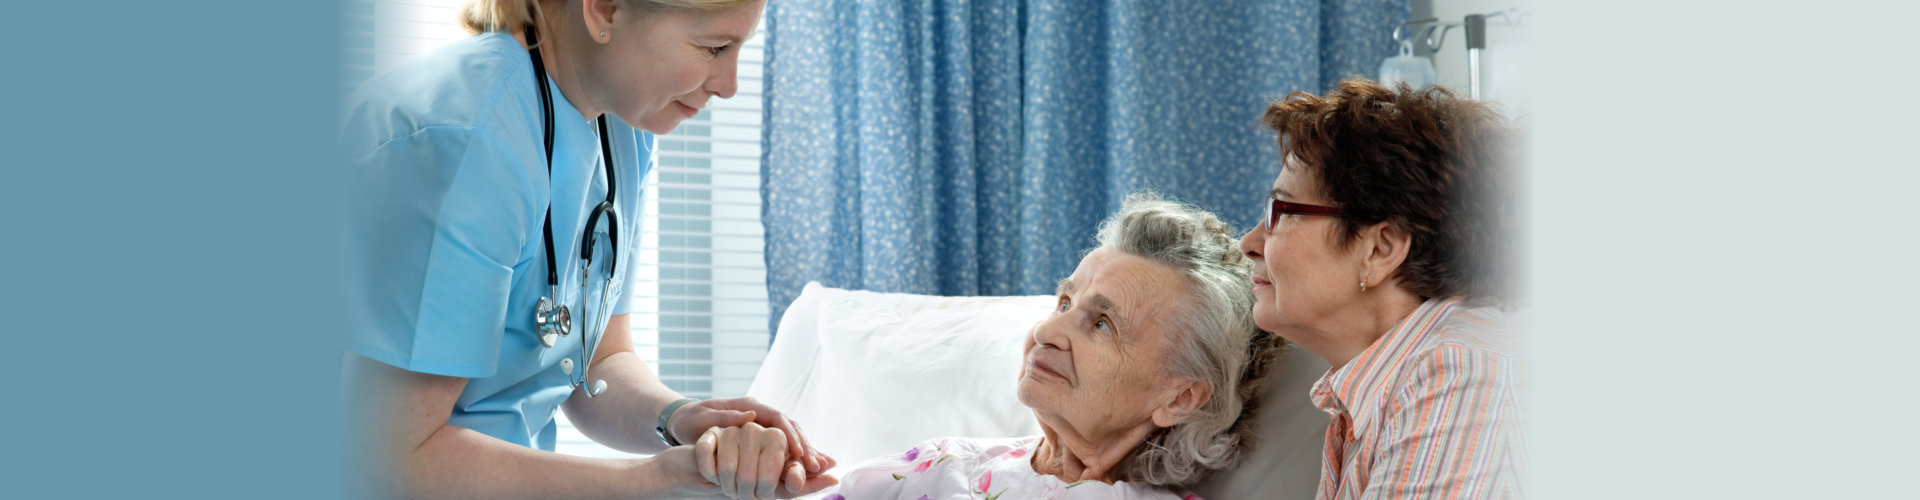 nurse attending to elderly woman in bed